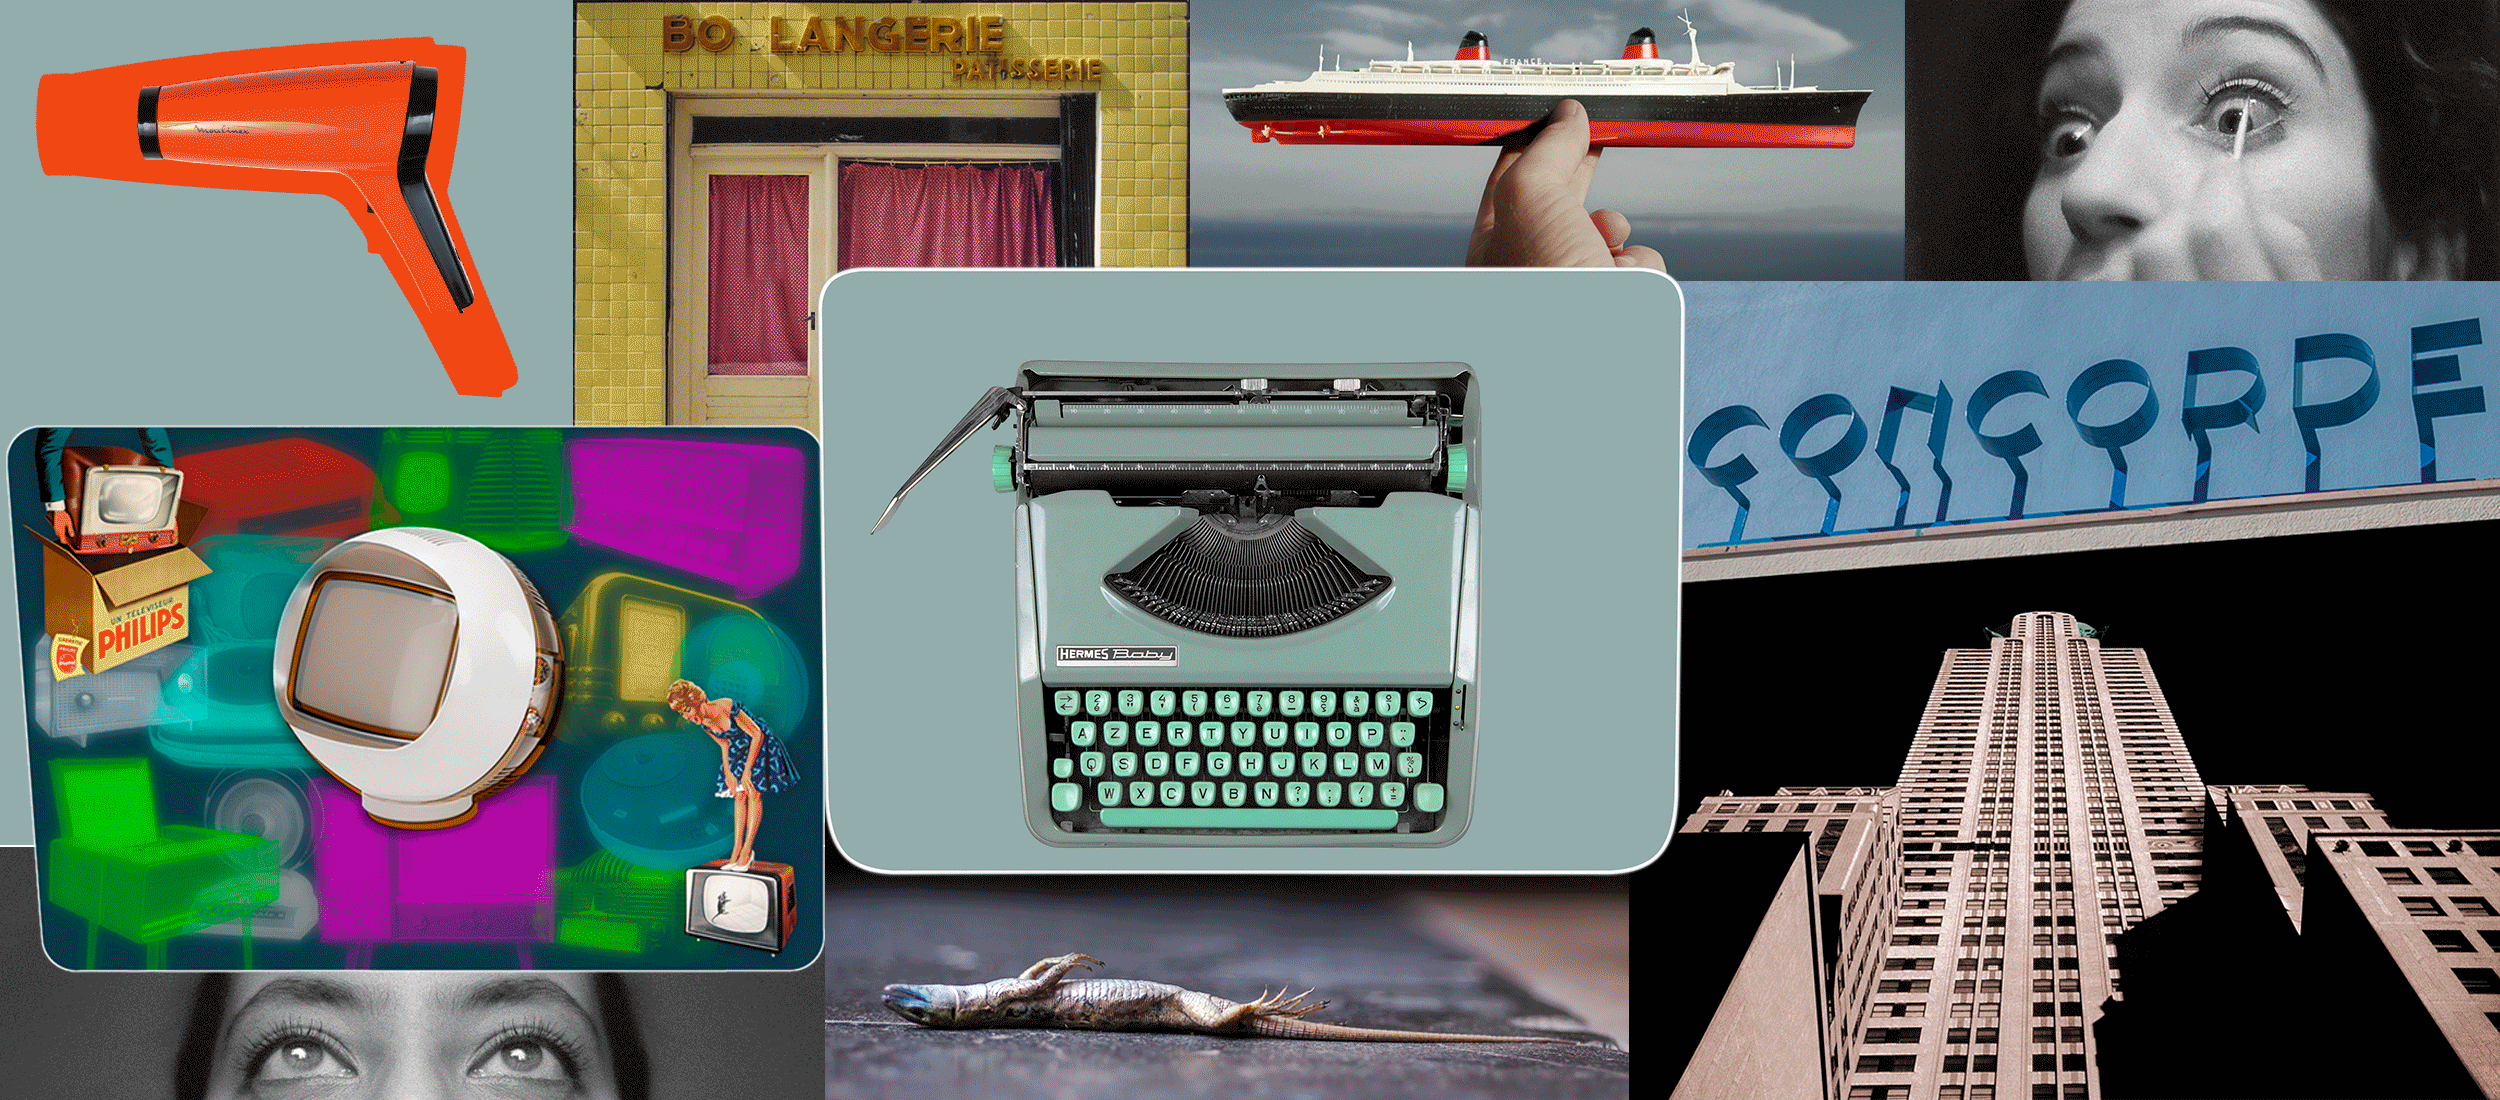 Art Digital, Collage de photos de machine à écrire, building New-yorkais, lézard, paquebot France, yeux, etc...